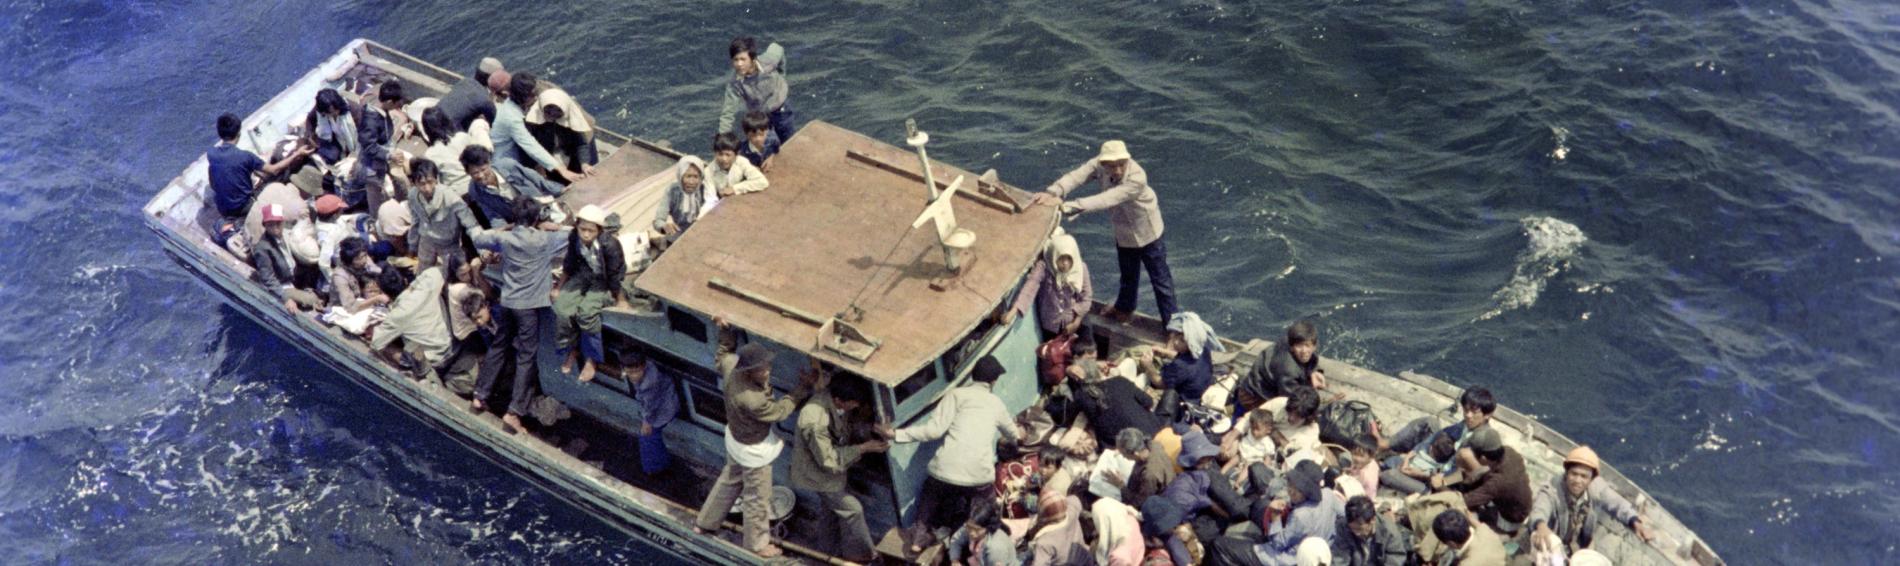 Un bâteau de fortune, rempli à ras bord de réfugiés vietnamiens, sur l'eau.